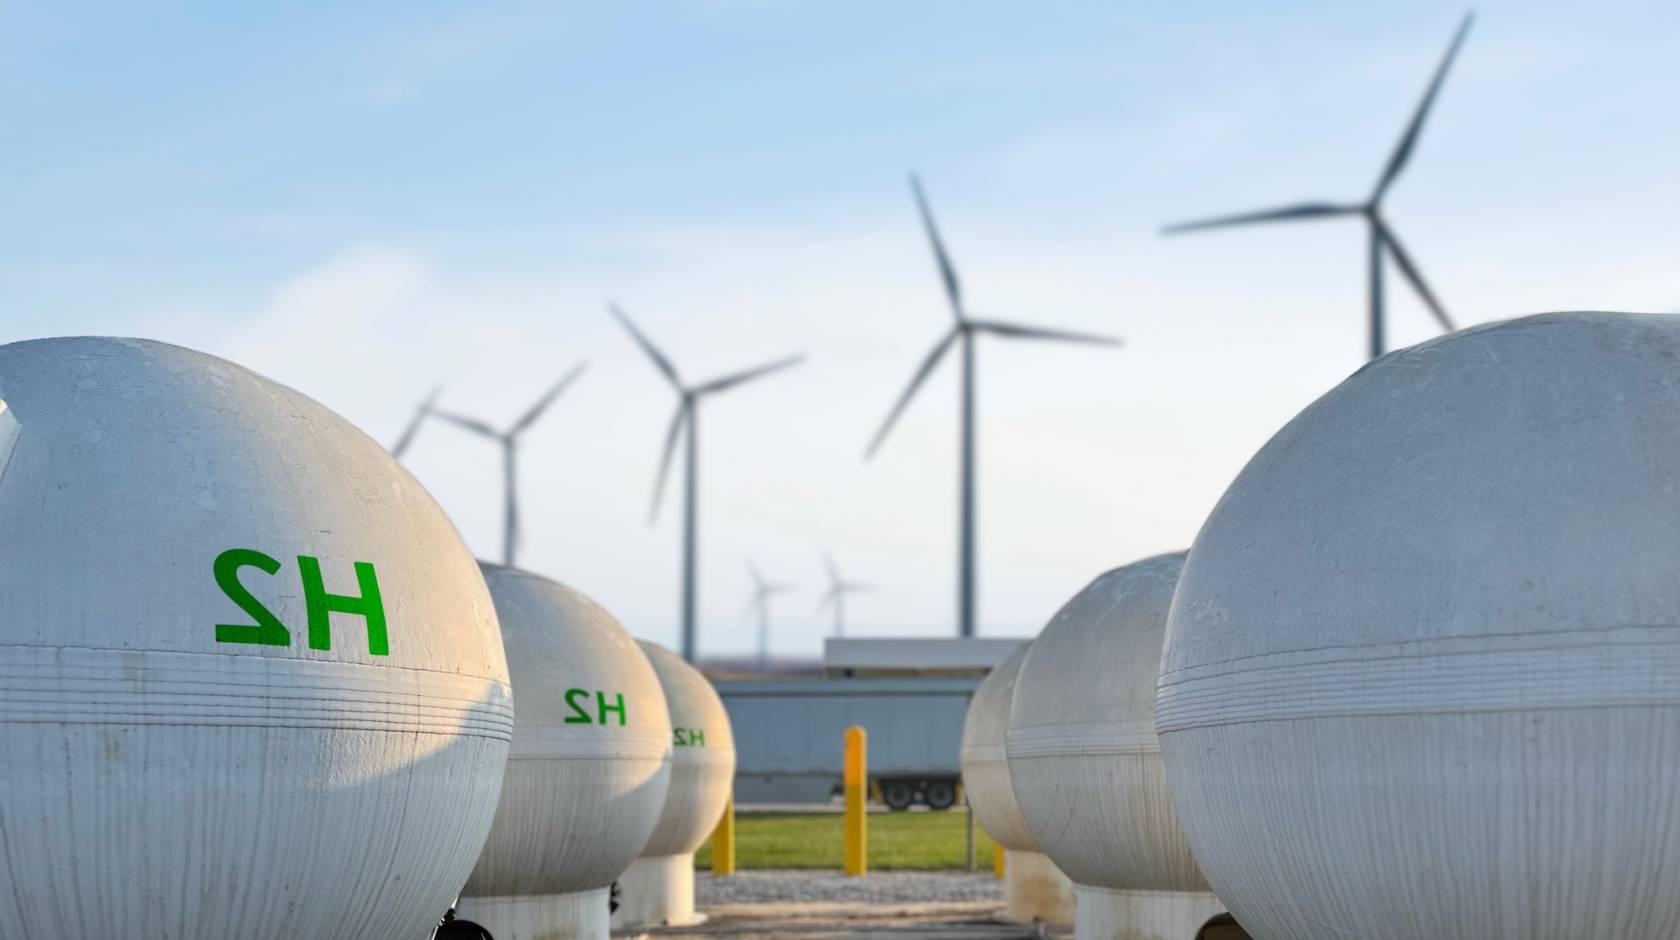 两排白色的球形罐，上面用绿色印着H2, 背景是四个风力涡轮机, 湛蓝的天空